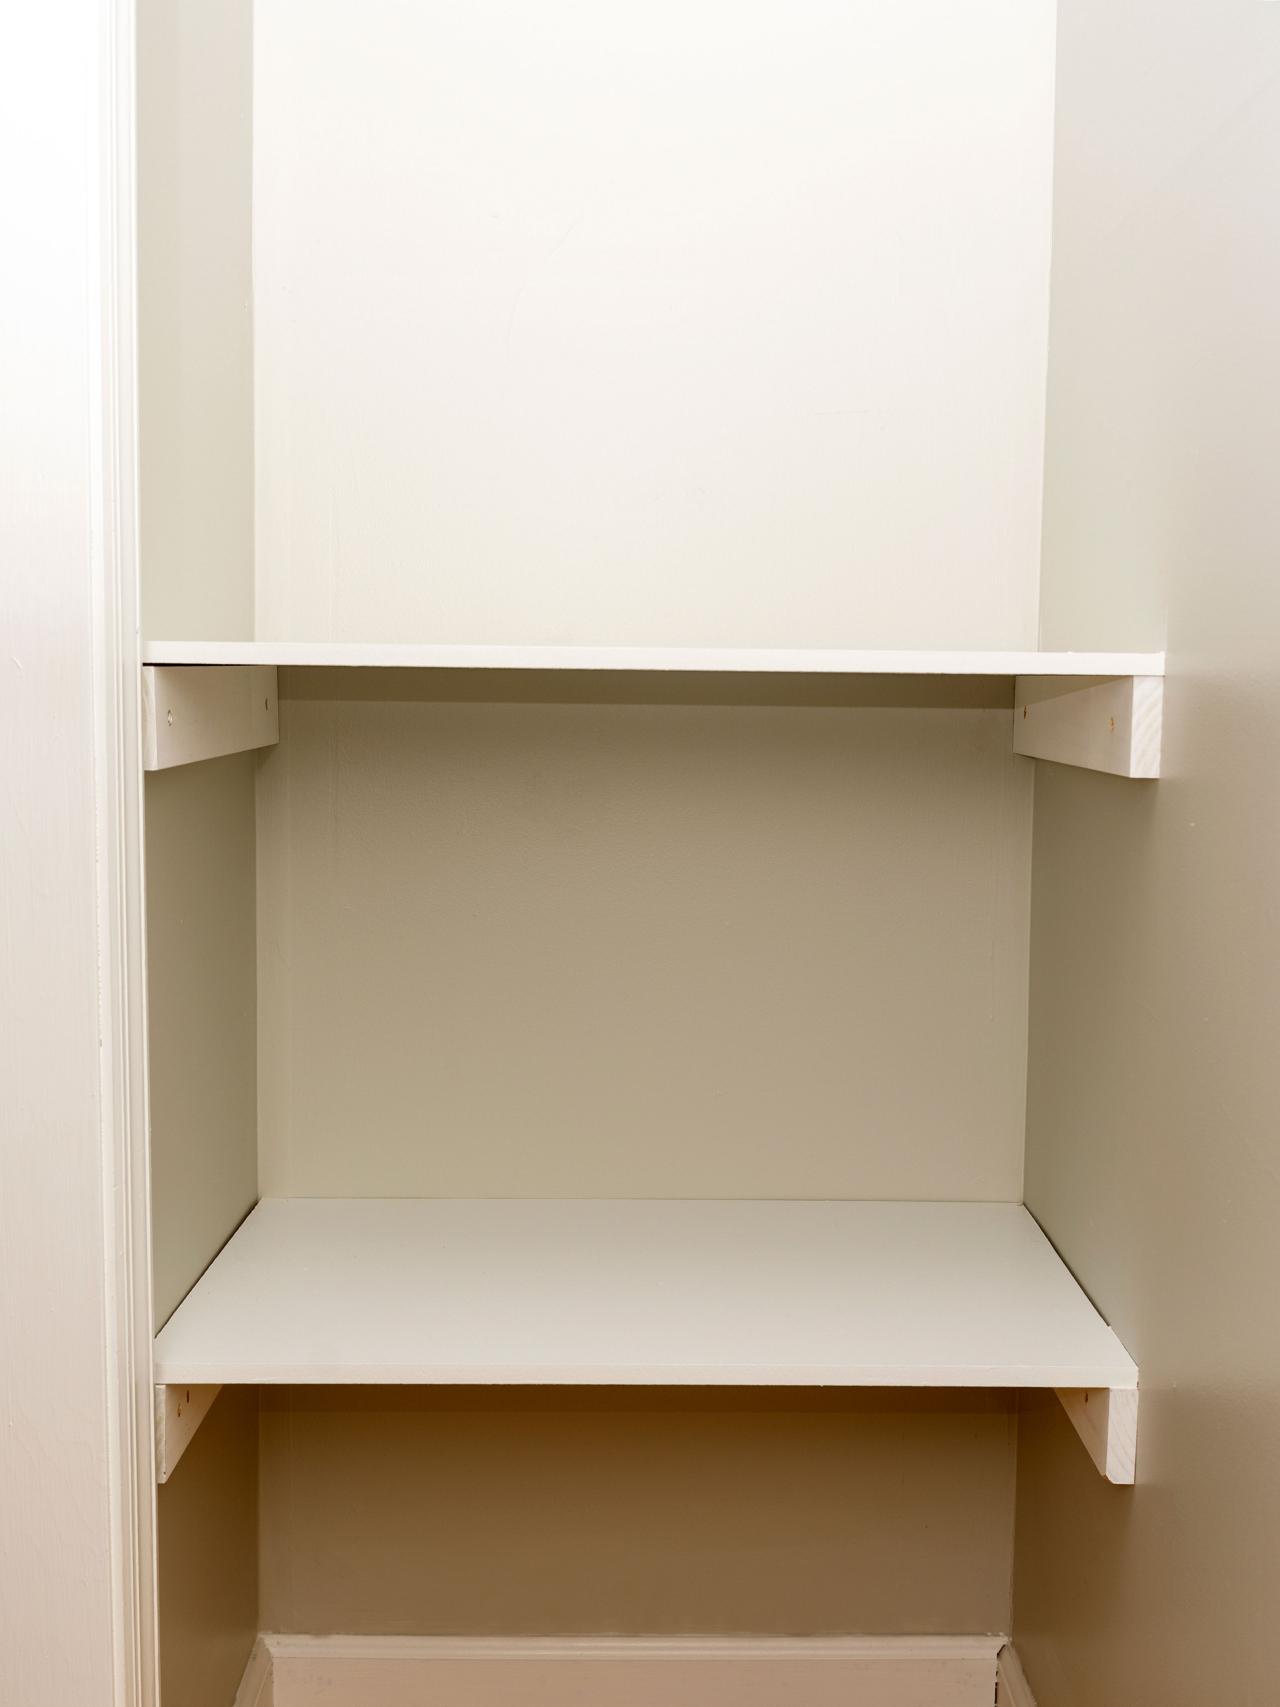 Closet Shelves Diy, How To Install Wood Closet Shelves